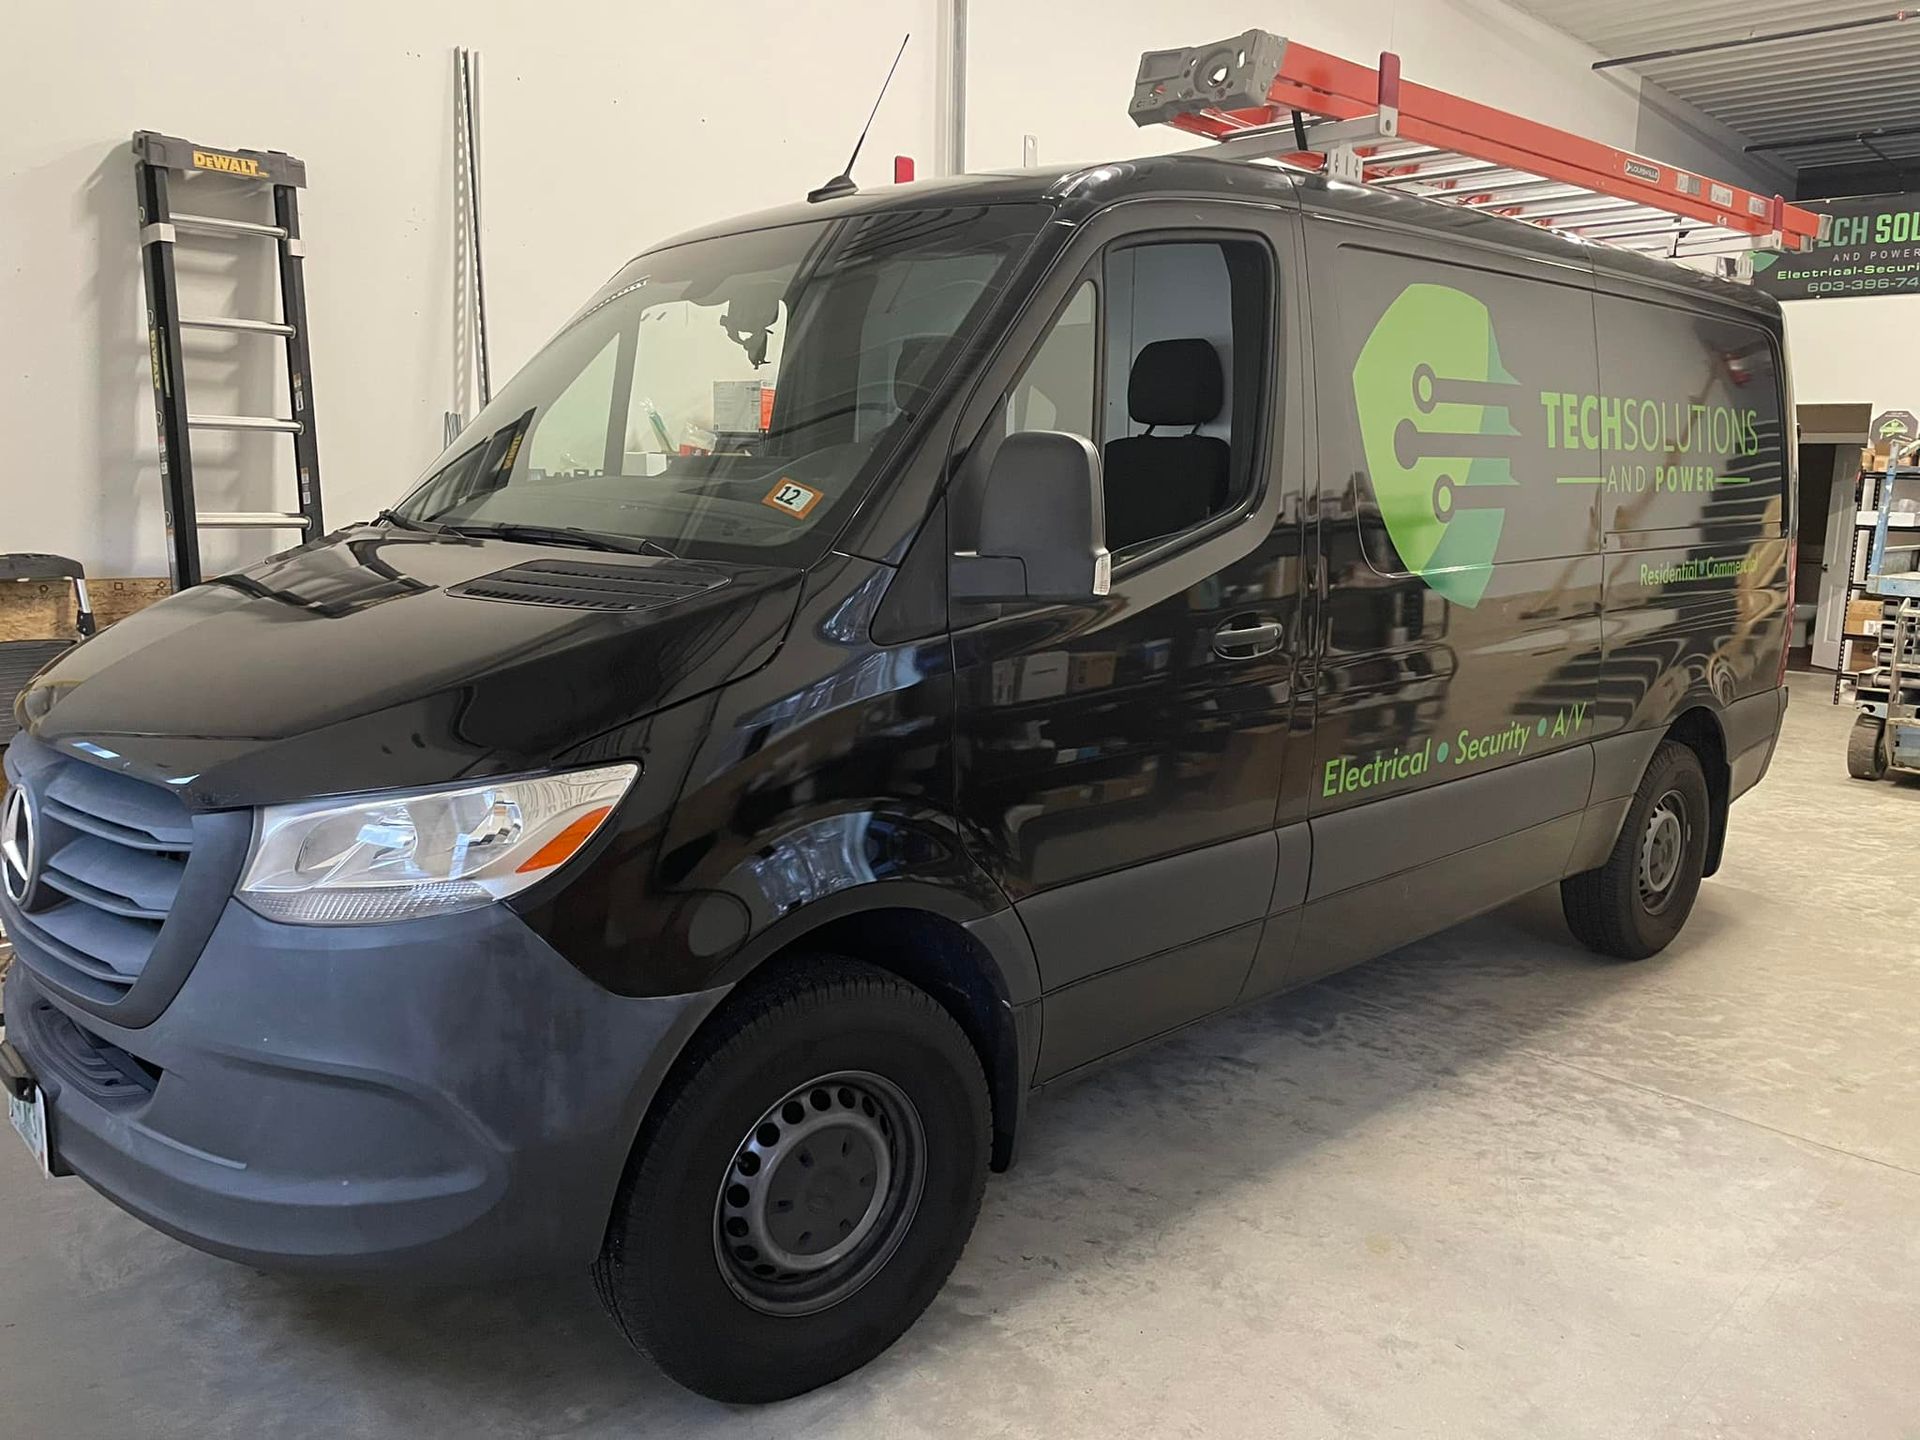 Tech Solutions Service Van